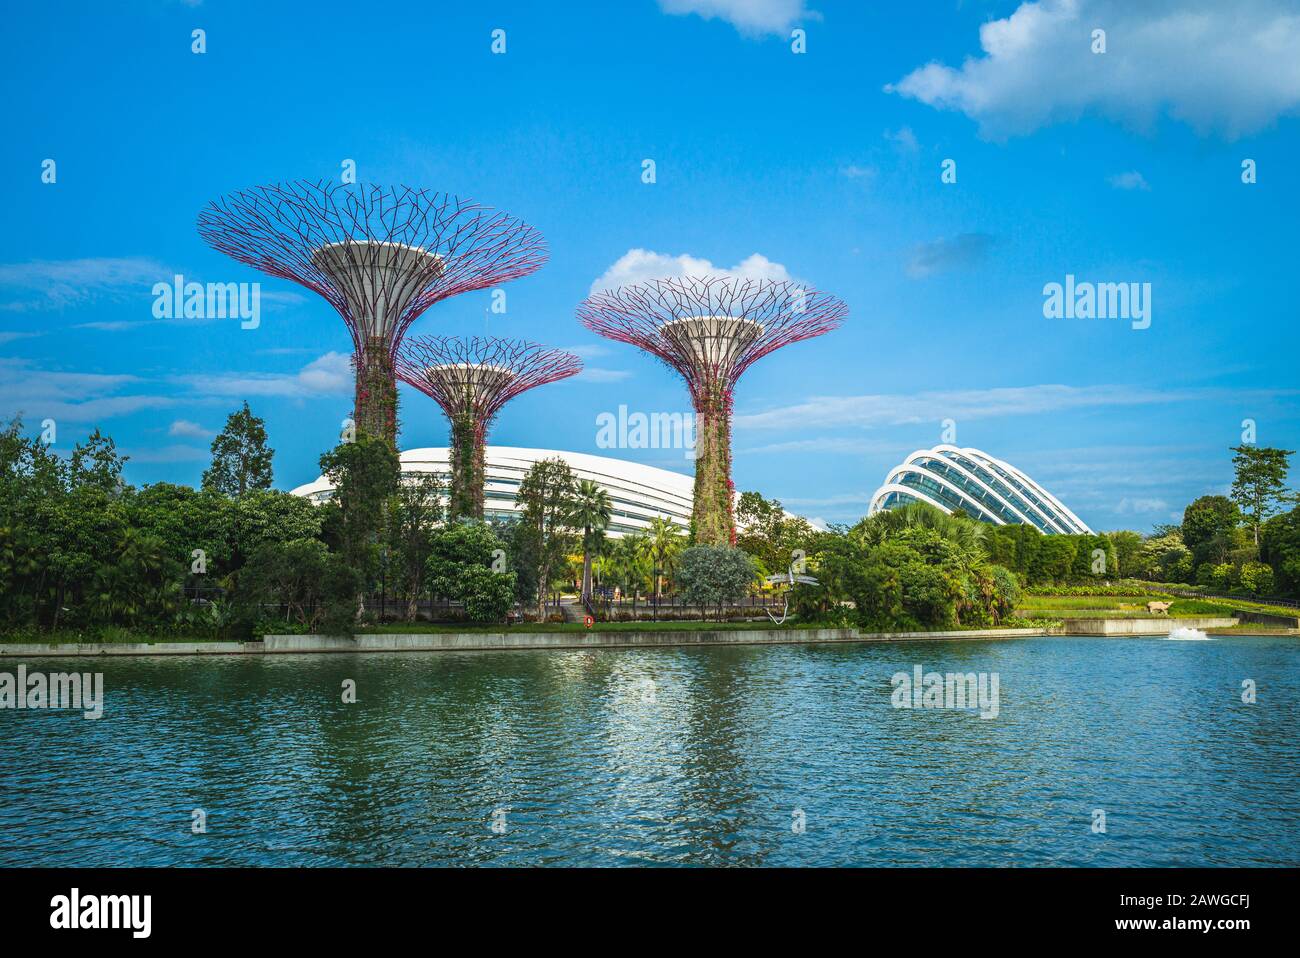 Singapur, Singapur - 6 de febrero de 2020: Paisaje de jardines junto a la bahía con cúpula de flores, bosque nuboso y arboleda Supertree en la bahía marina por la noche Foto de stock